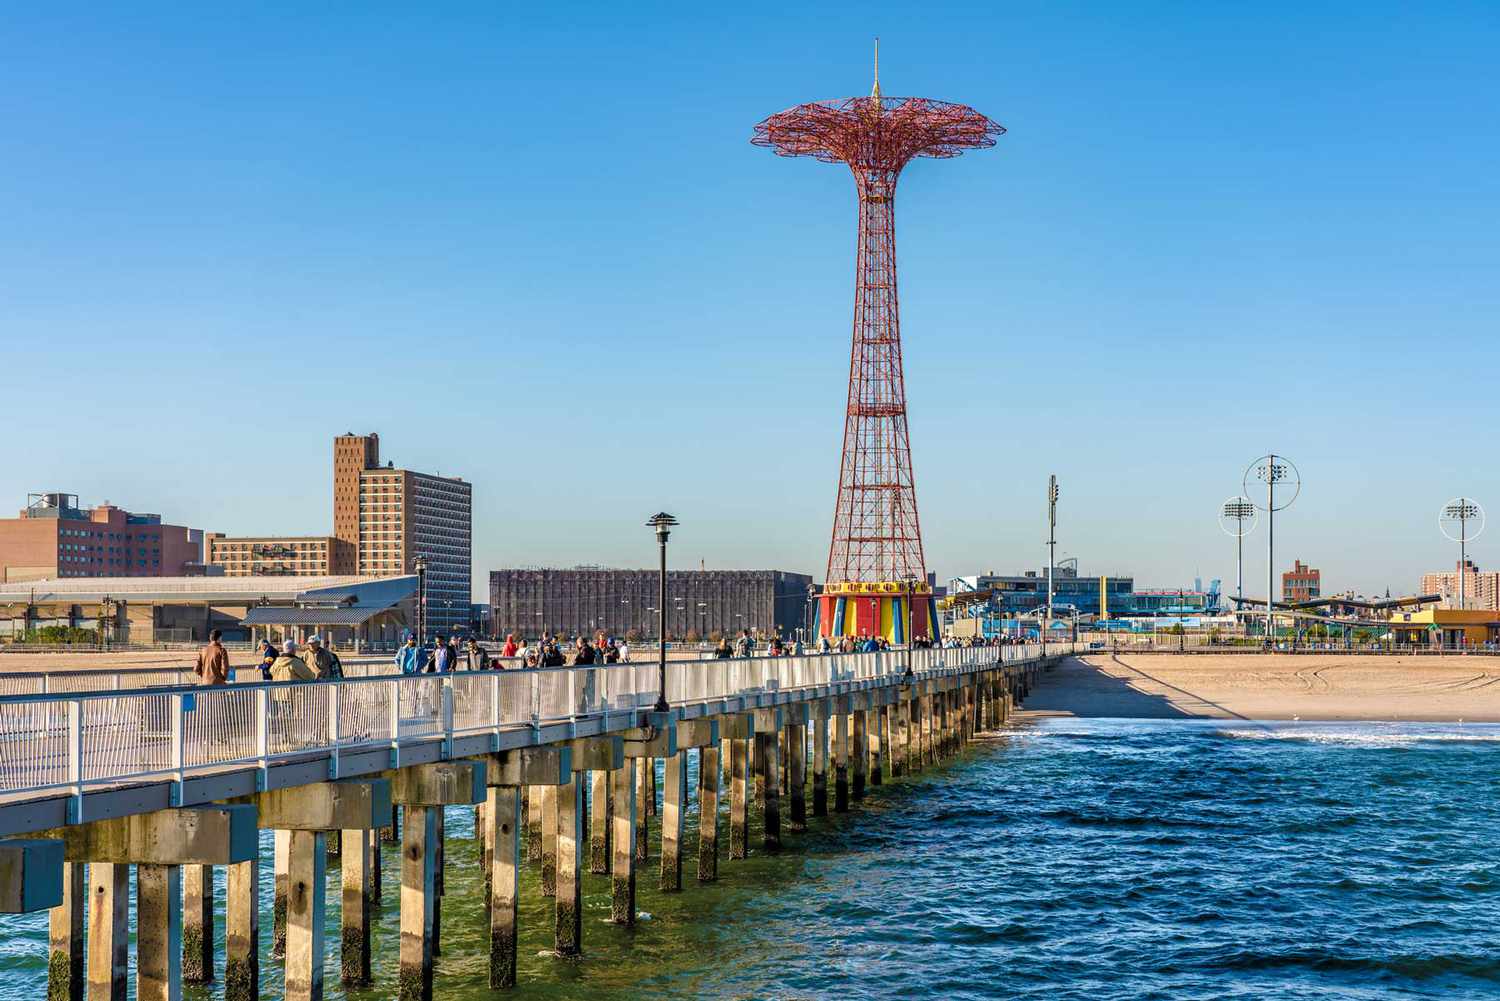 Ceci est une vue de la jetée et du front de mer à Coney Island le 14 octobre 2019 à New York